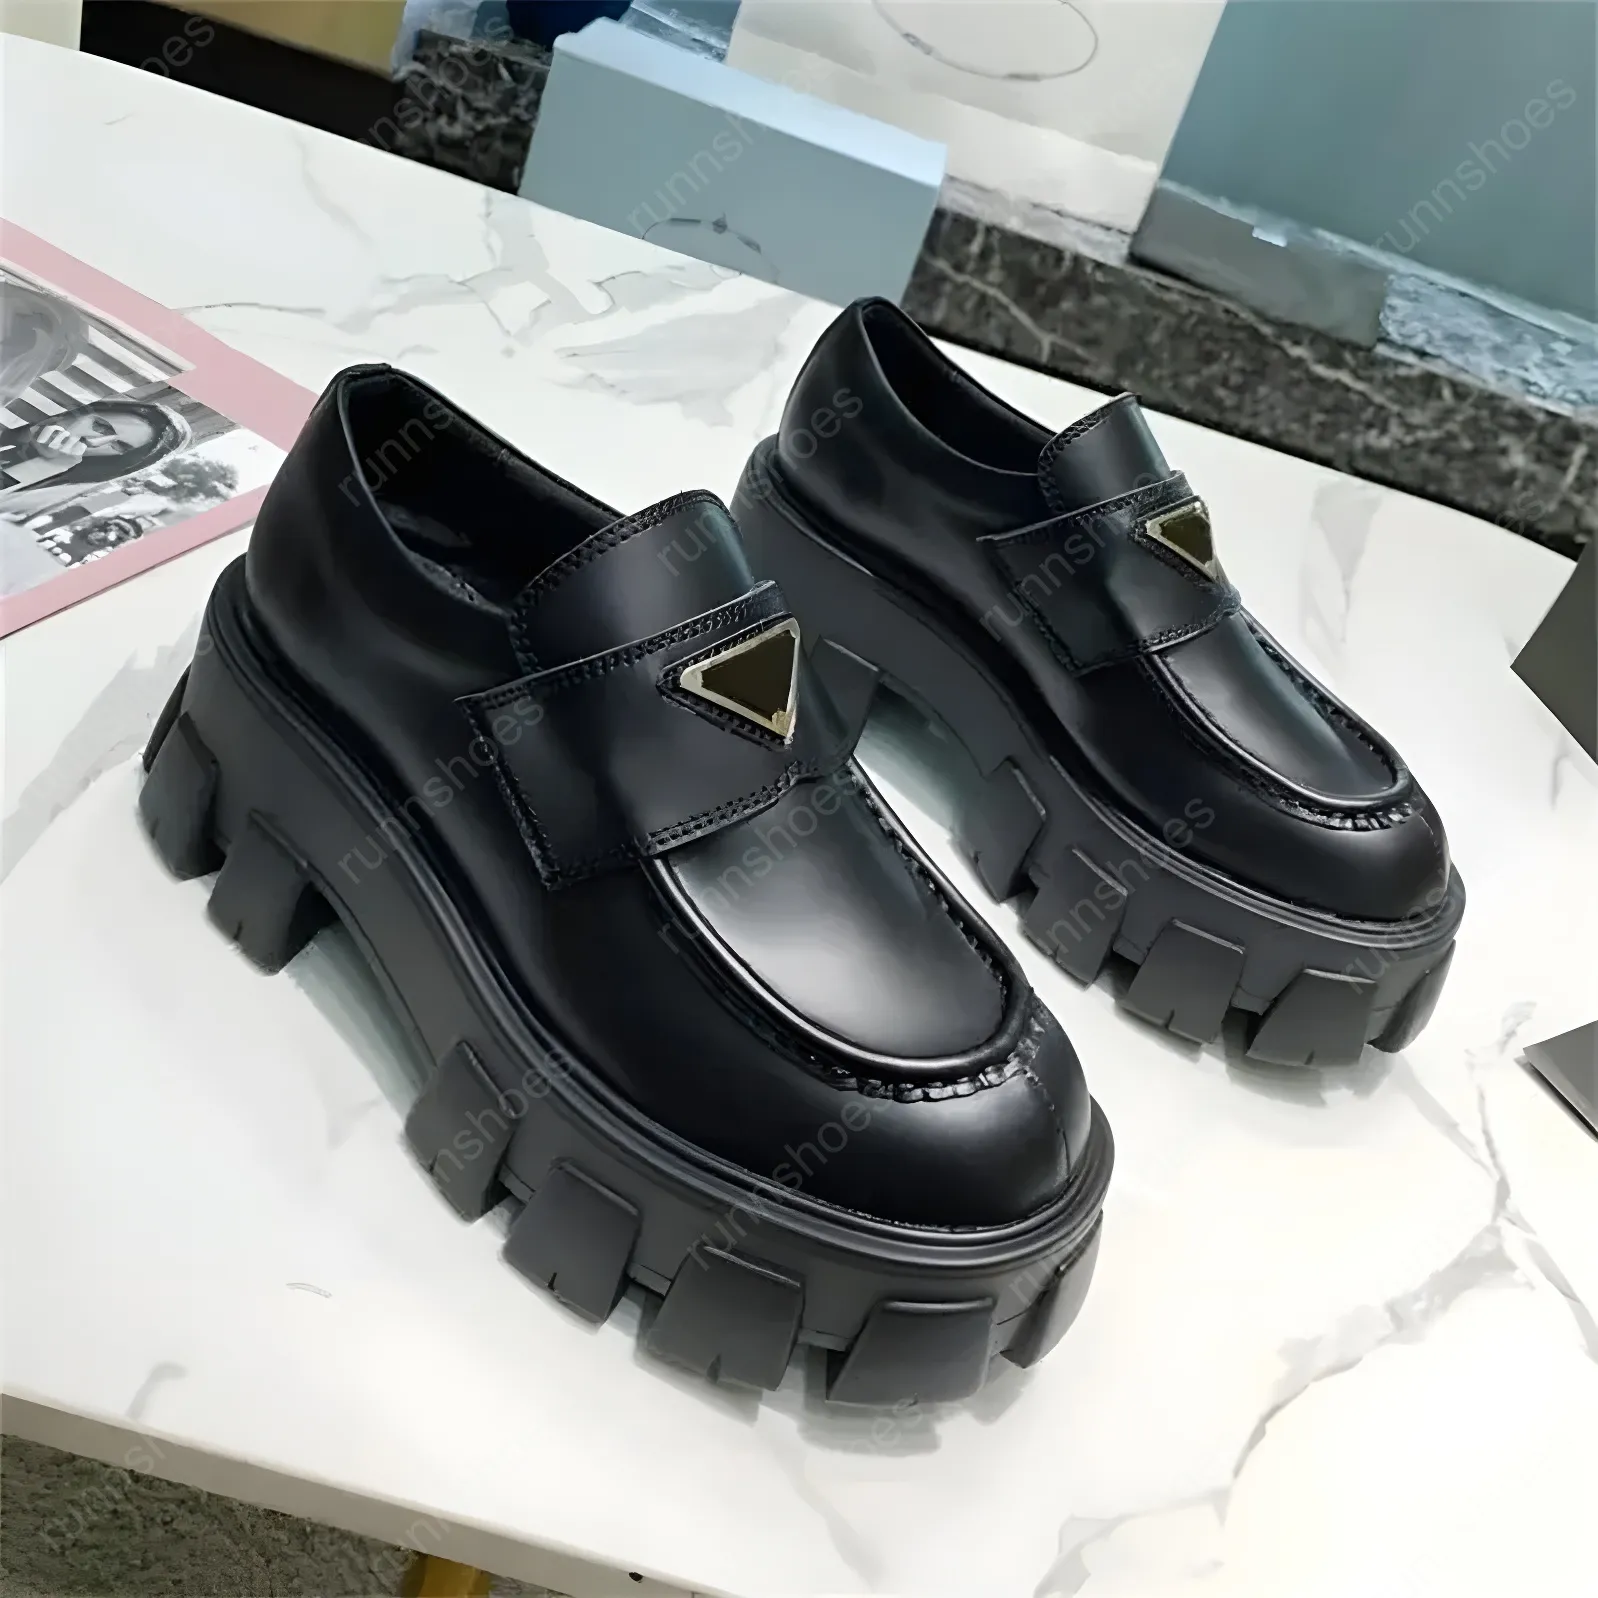 Buty mokasyna designerskie miękka platforma krowide trampki gumowe czarne błyszczące skórzane grube okrągłe tenisówki grube dolne rozmiar butów 35-41